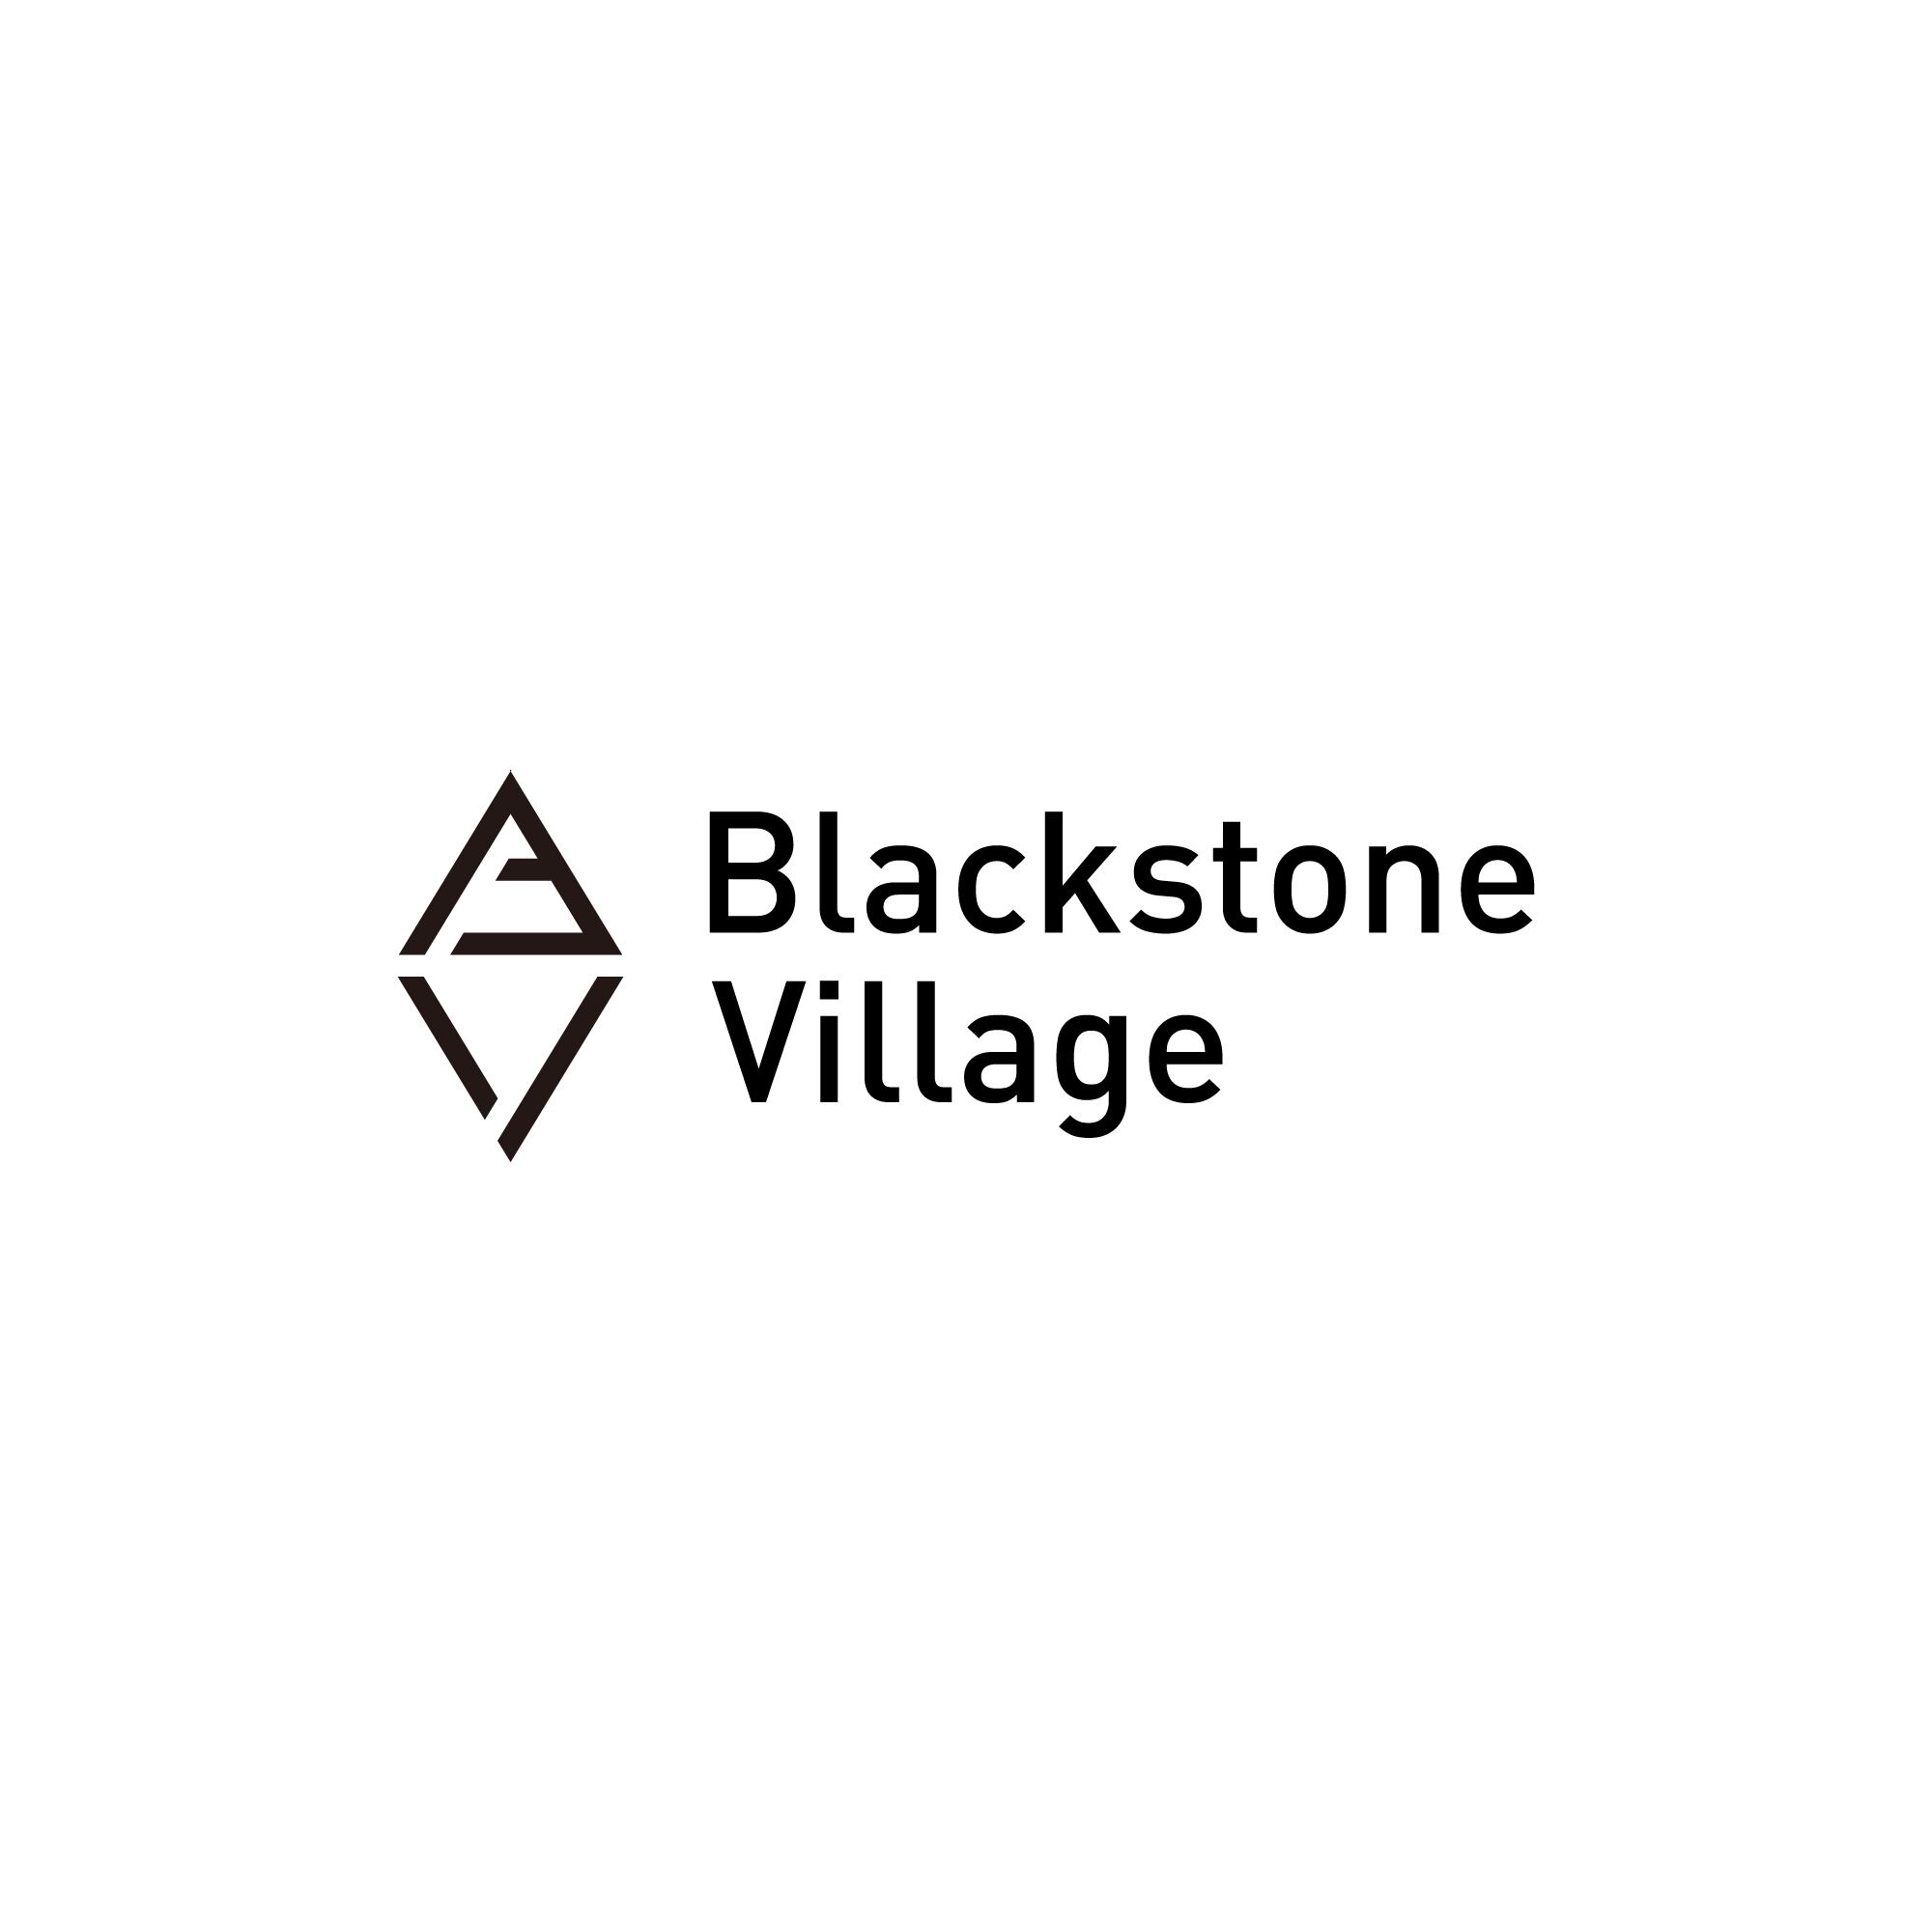 Blackstone Village